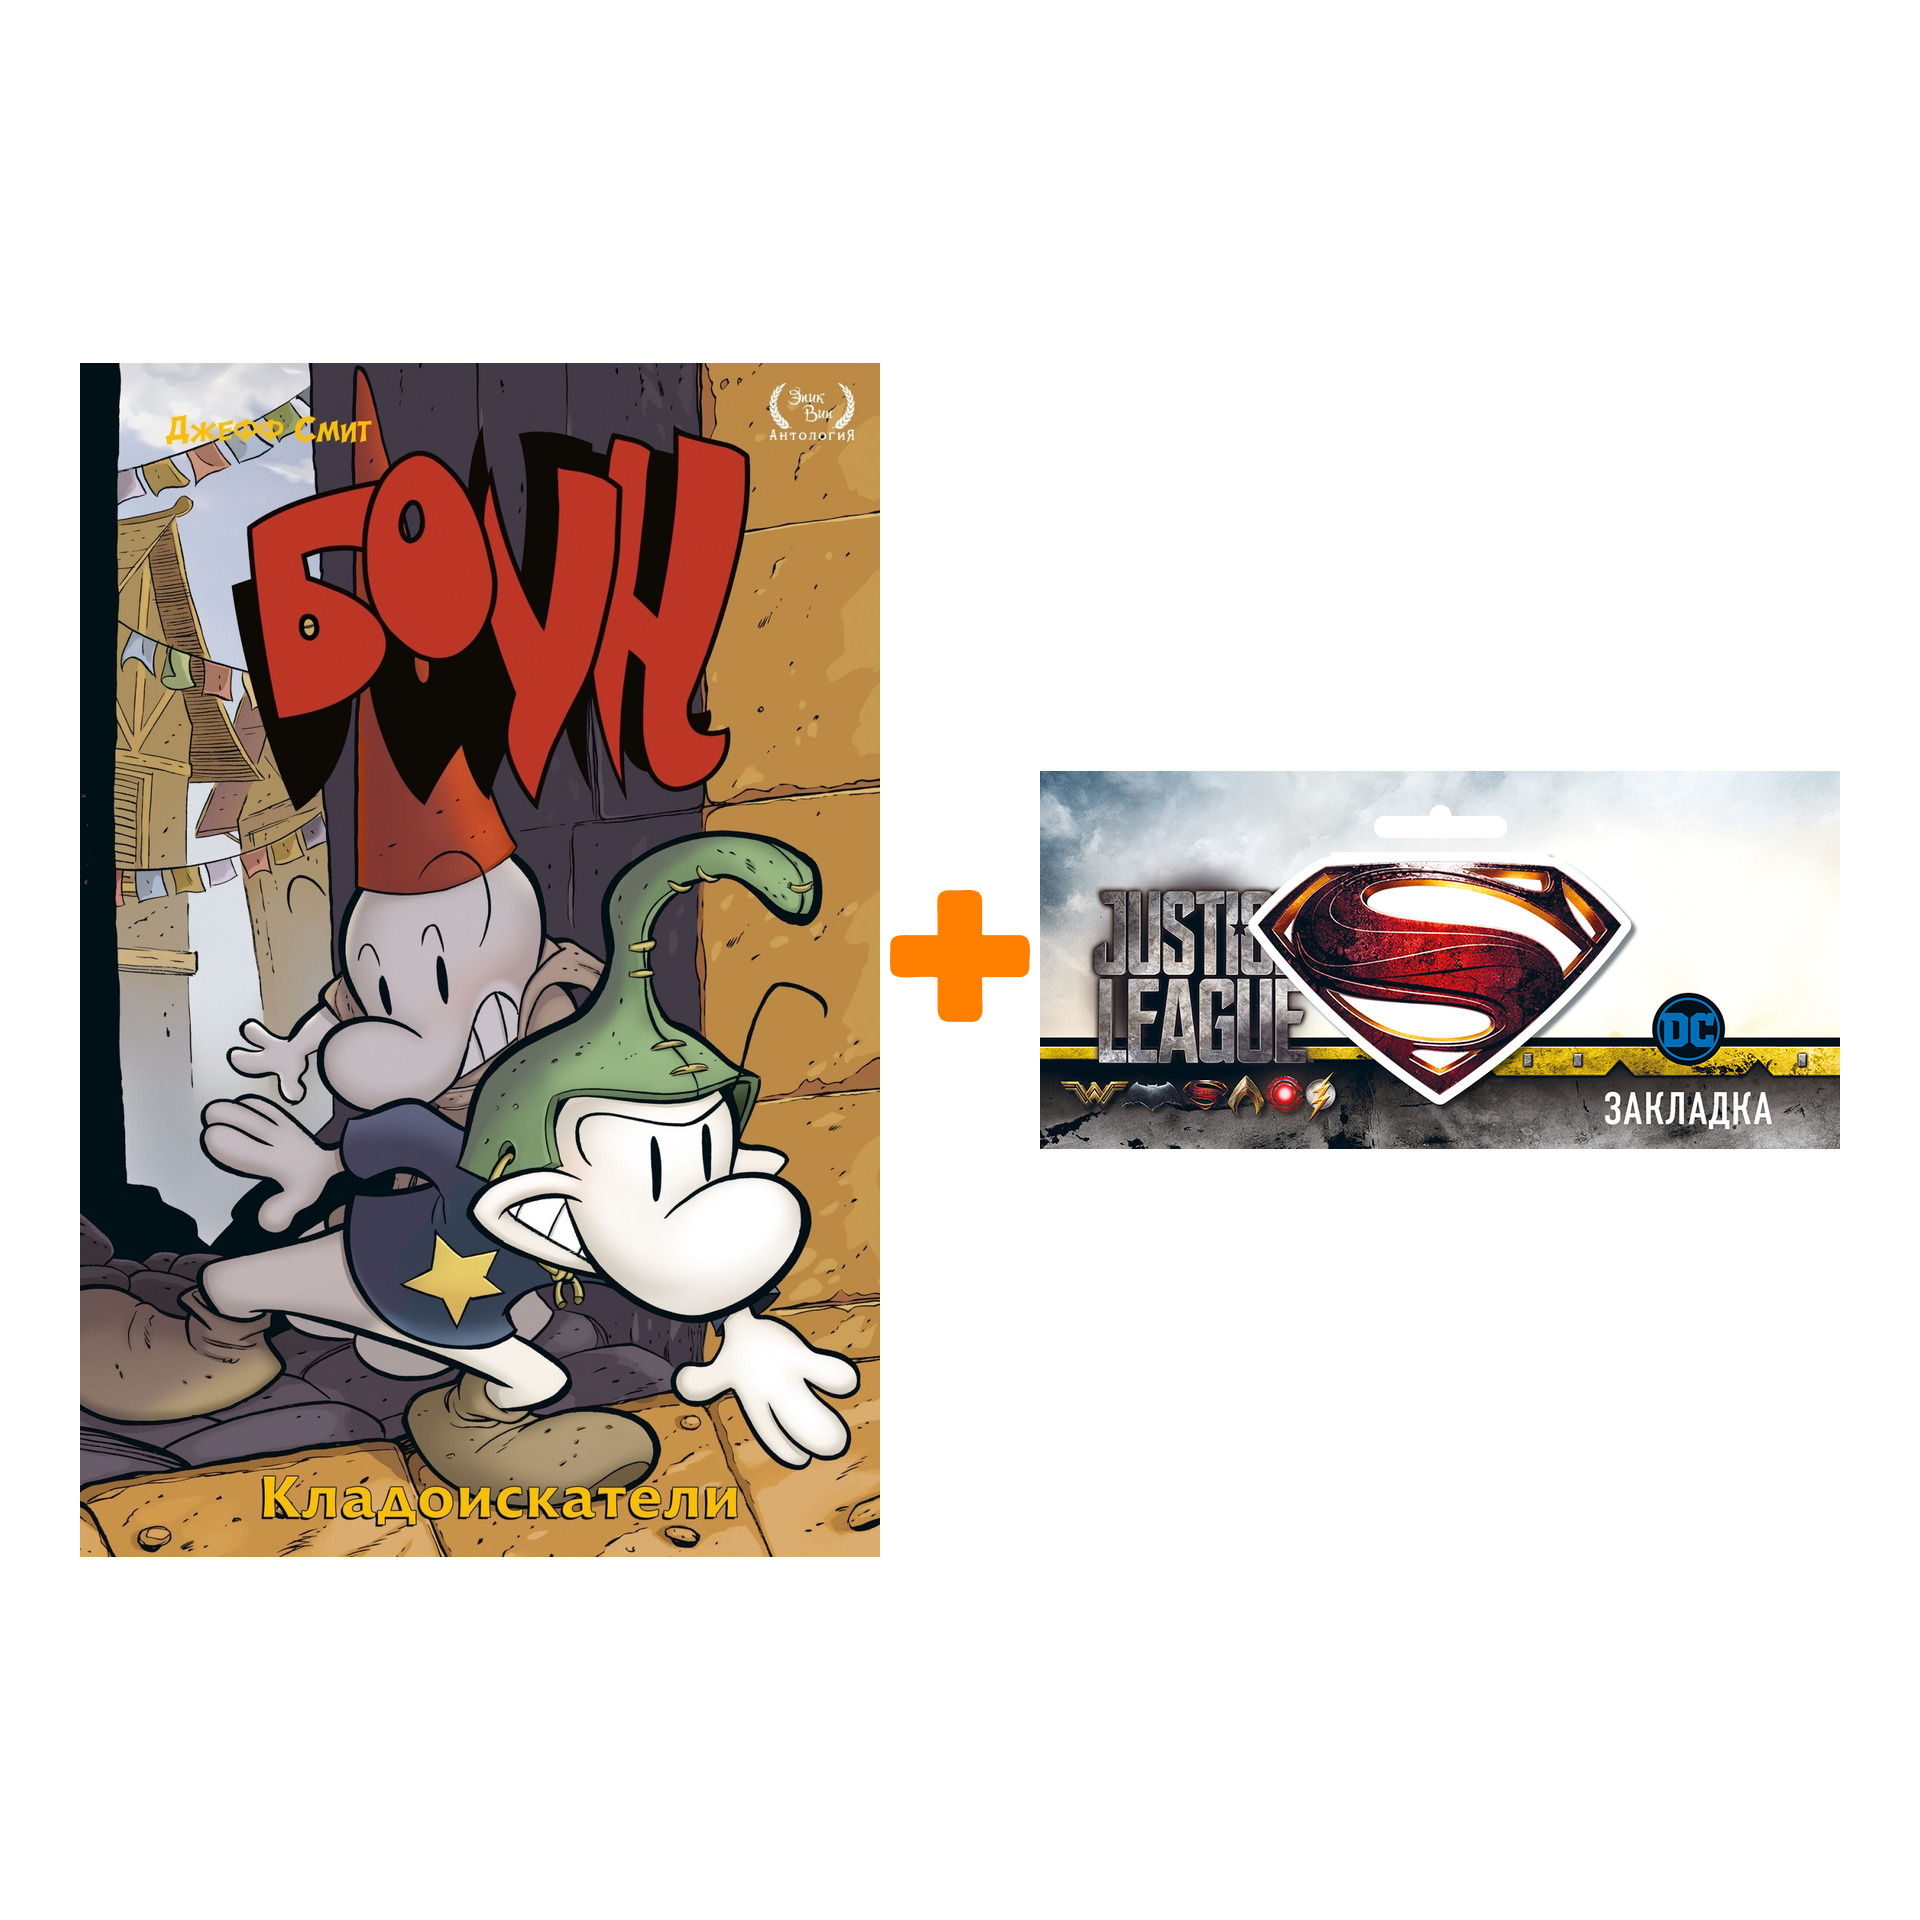 Набор Комикс Боун Том 8 Кладоискатели + Закладка DC Justice League Superman магнитная